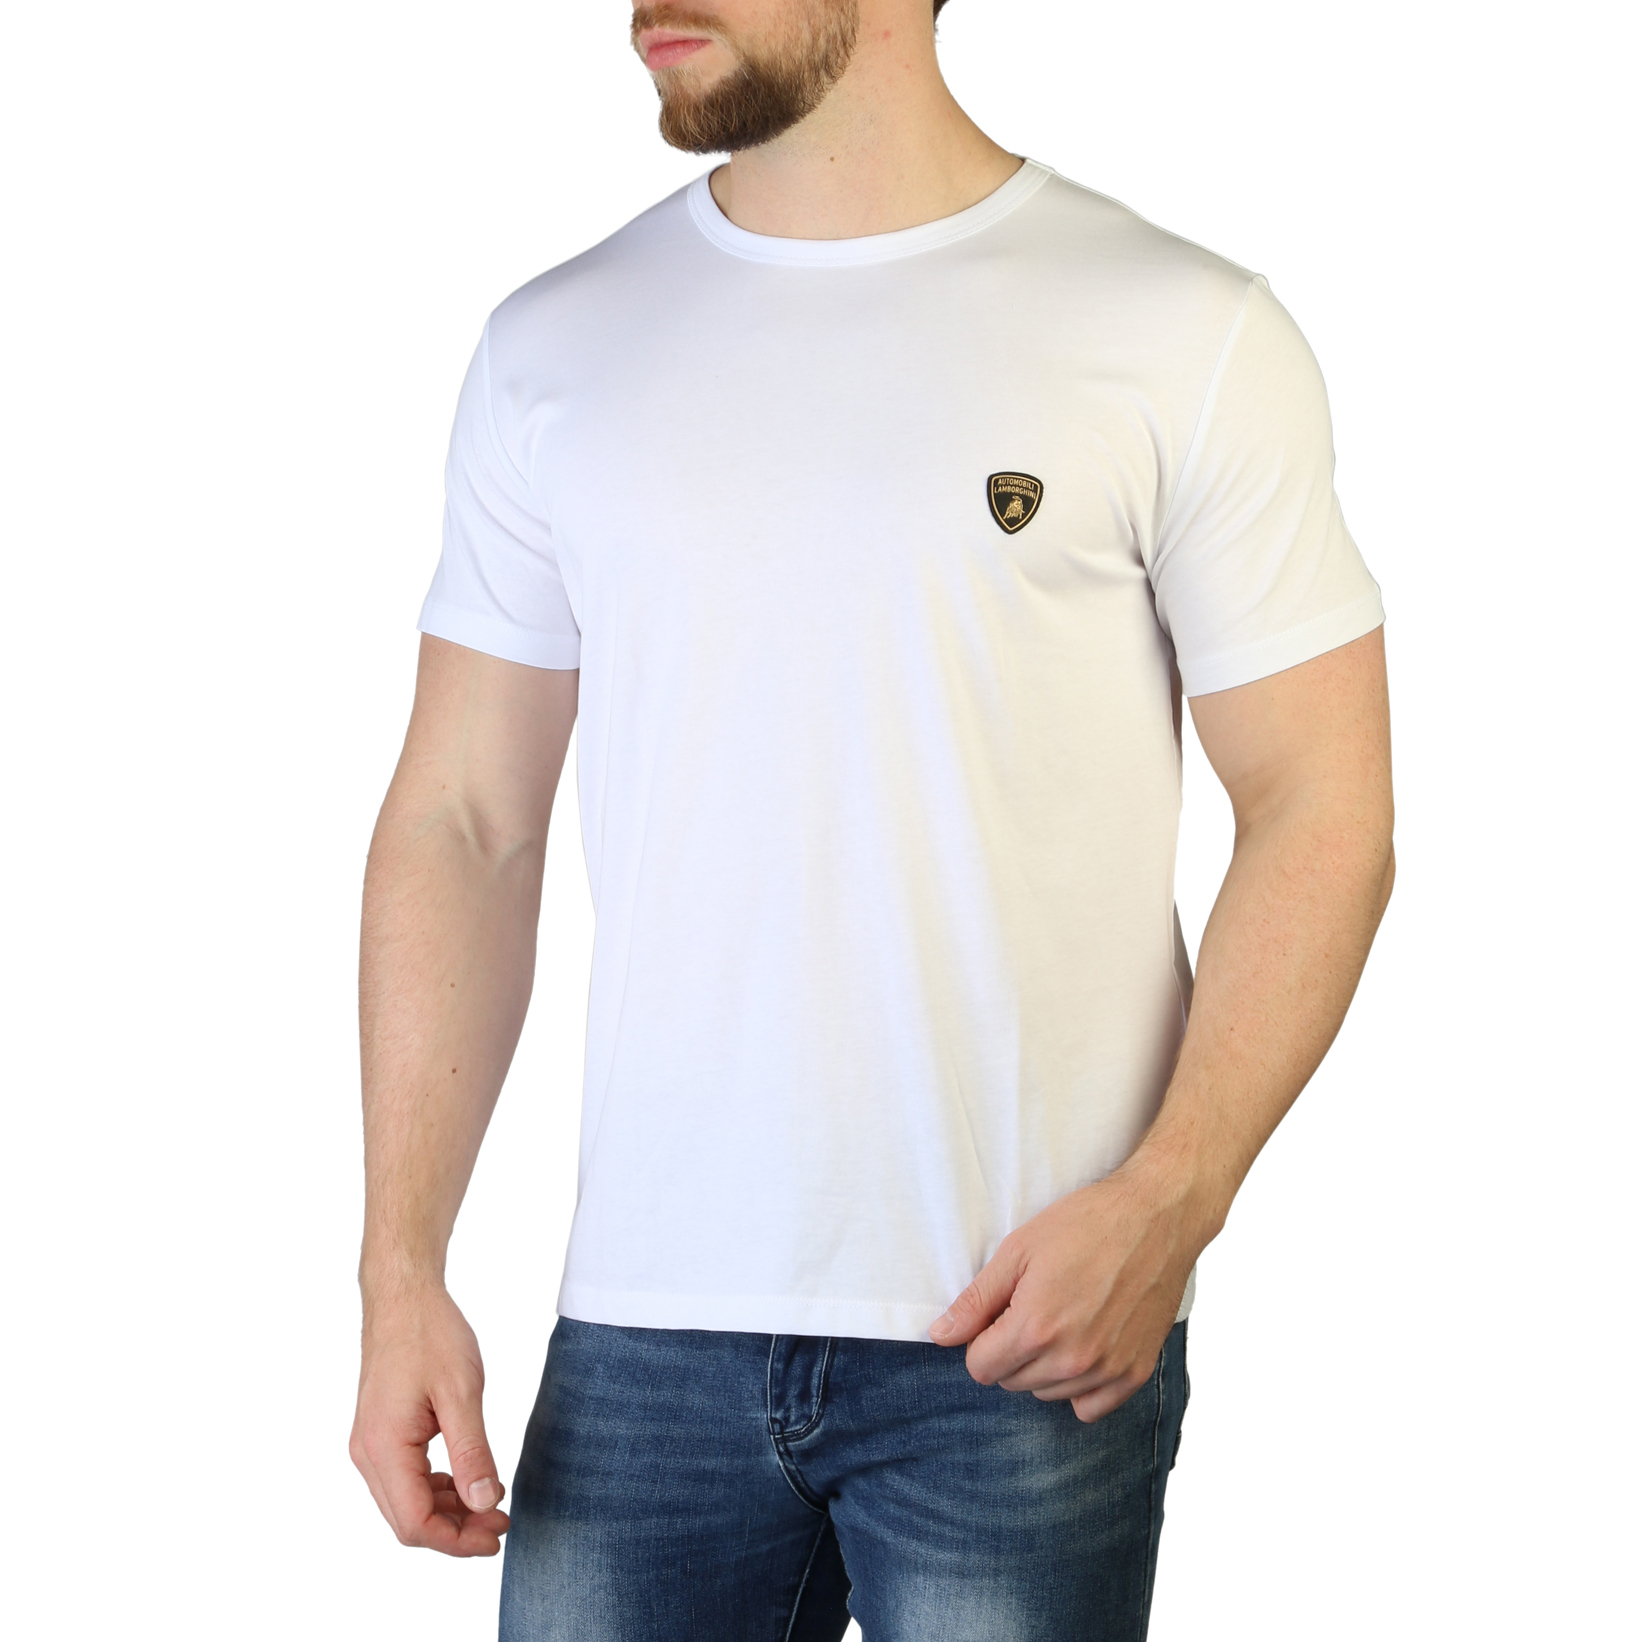 Lamborghini White T-shirts for Men - B3XVB7T1